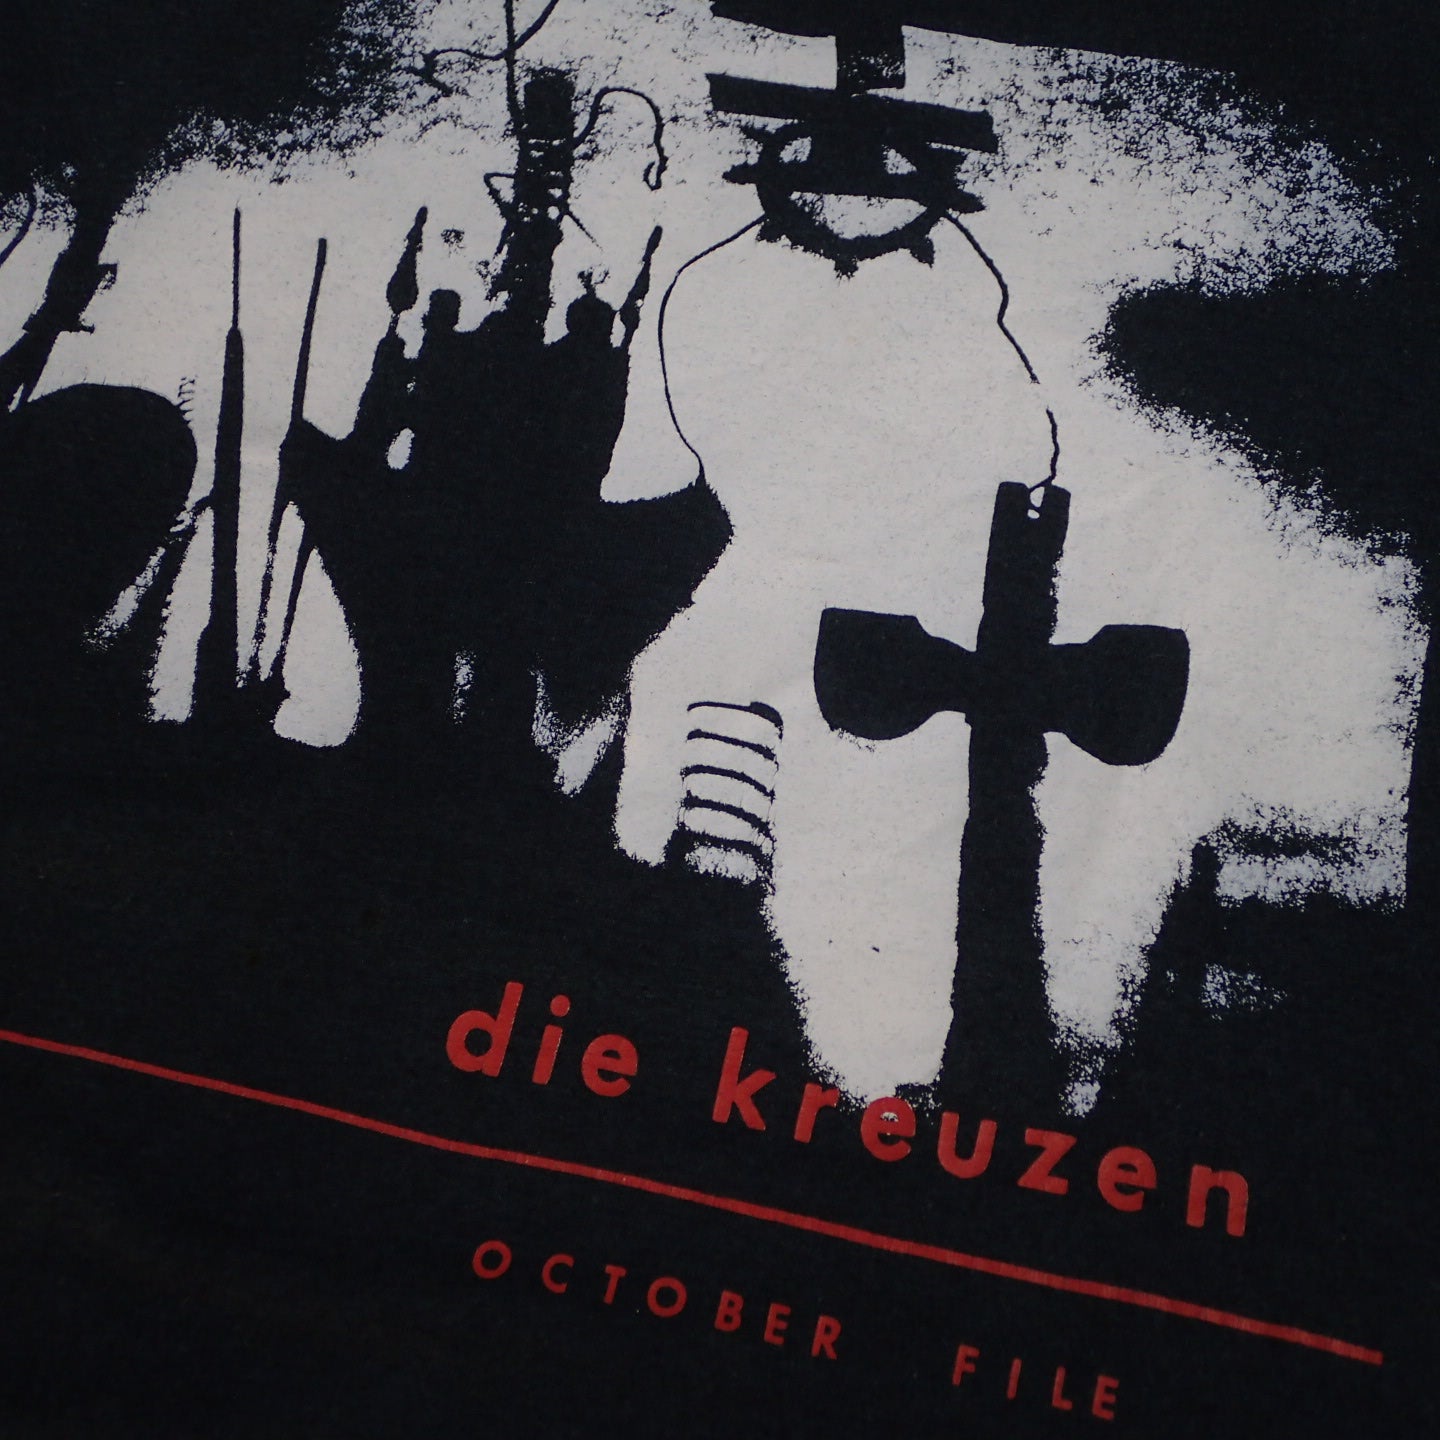 80s Die Kreuzen T-shirt "October File Tee"